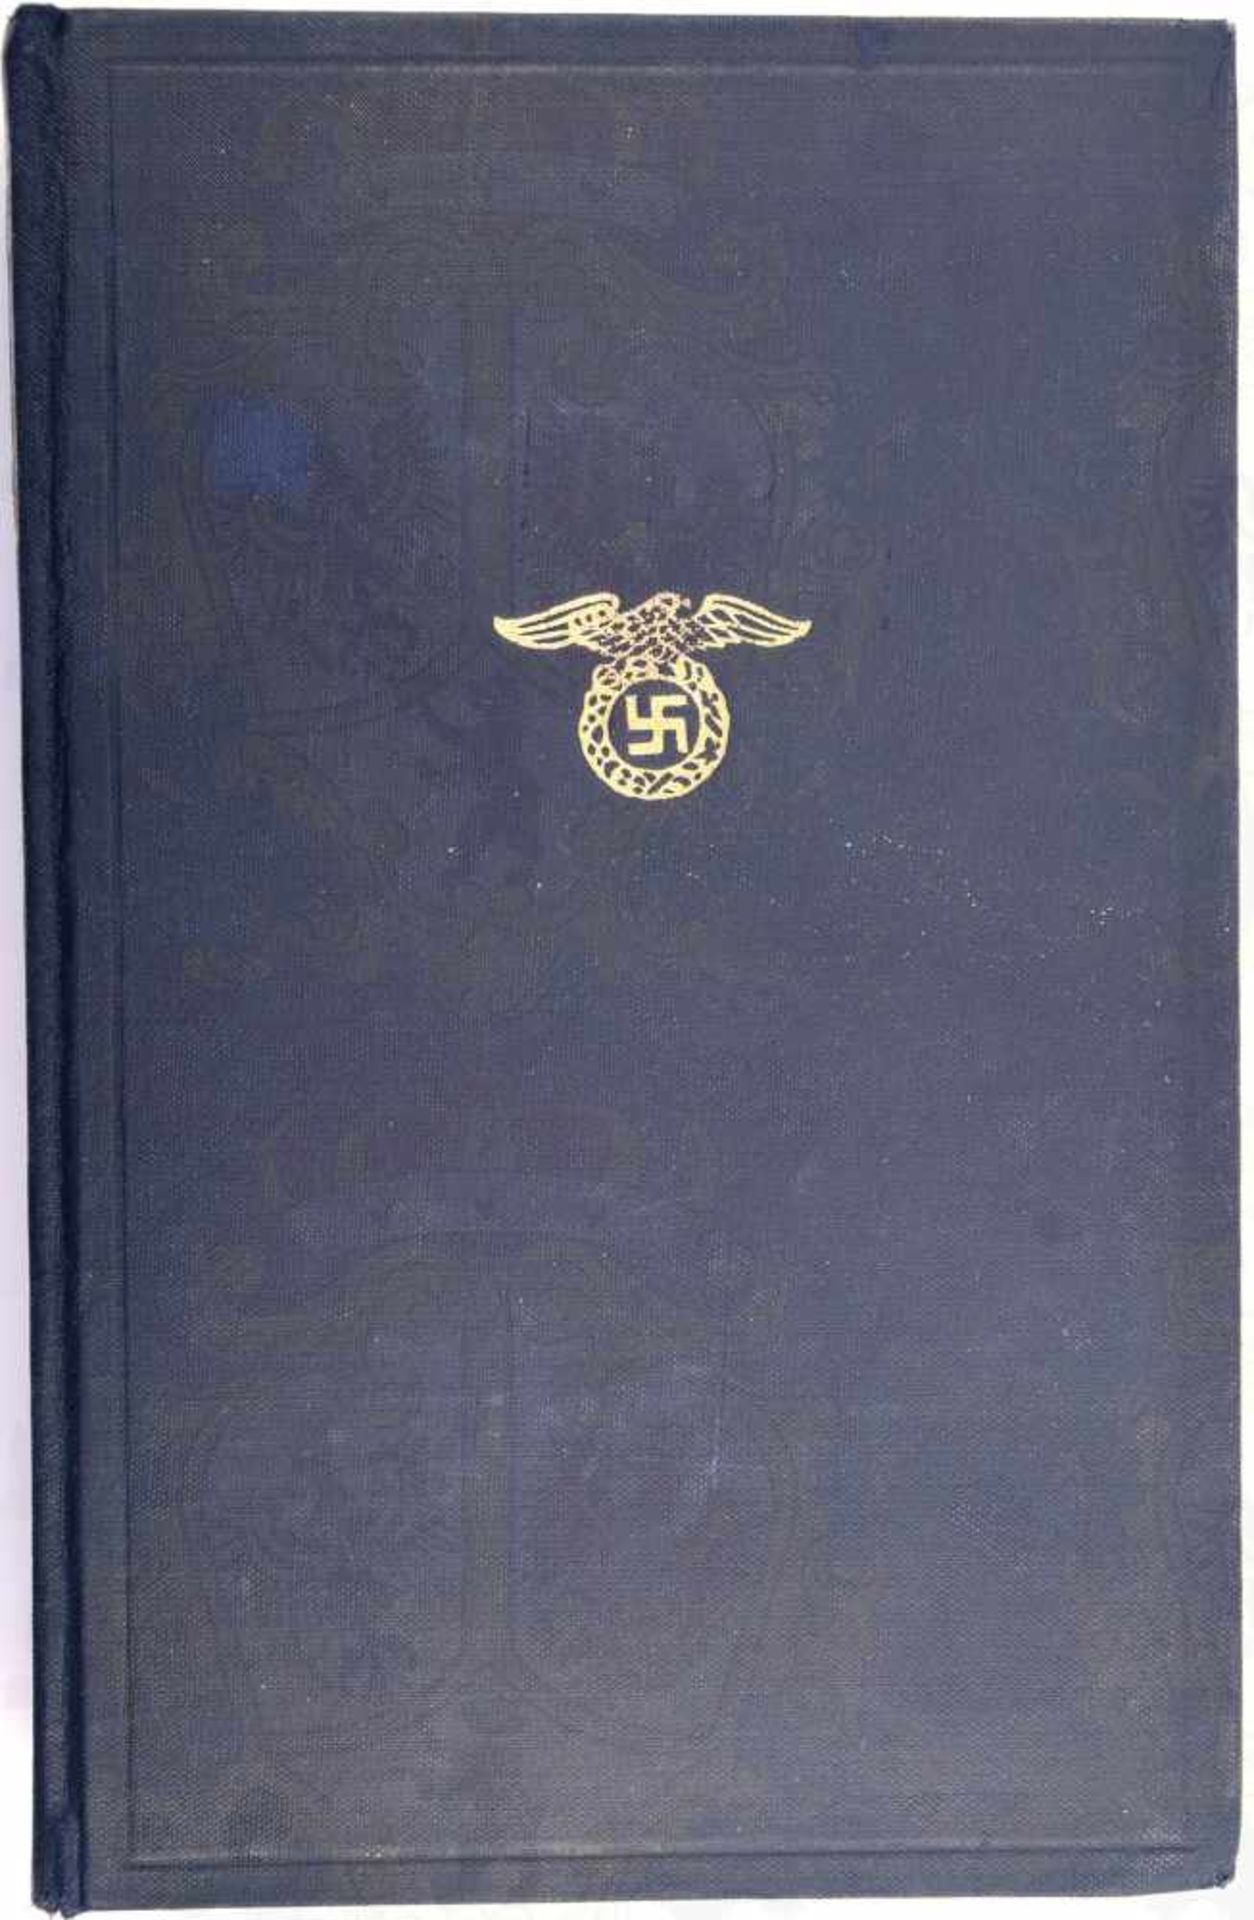 MEIN KAMPF, A. Hitler, Volksausgabe, Eher Verlag 1941, Portrait, 781 S., goldgepr. blaues Ln.,